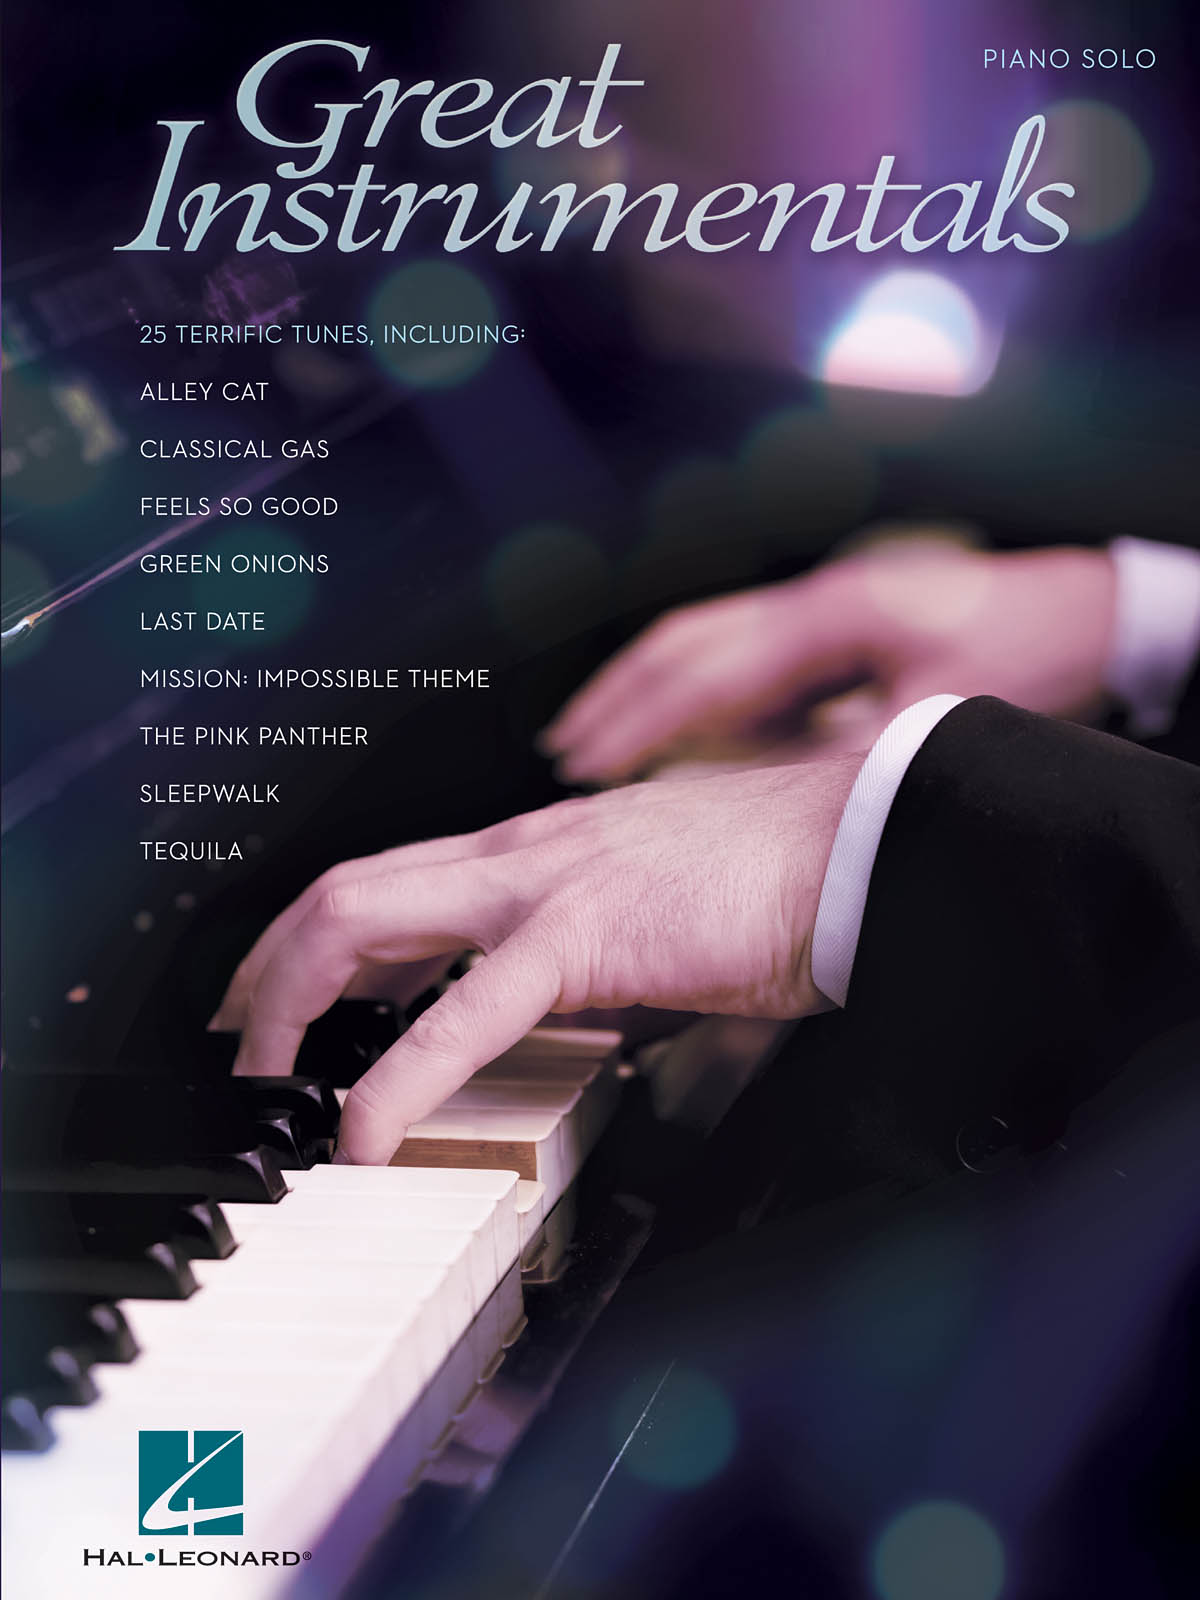 Инструментальная фортепианная музыка. Инструментал пианино. Инструментал. Инструменталка. Instrumentals.